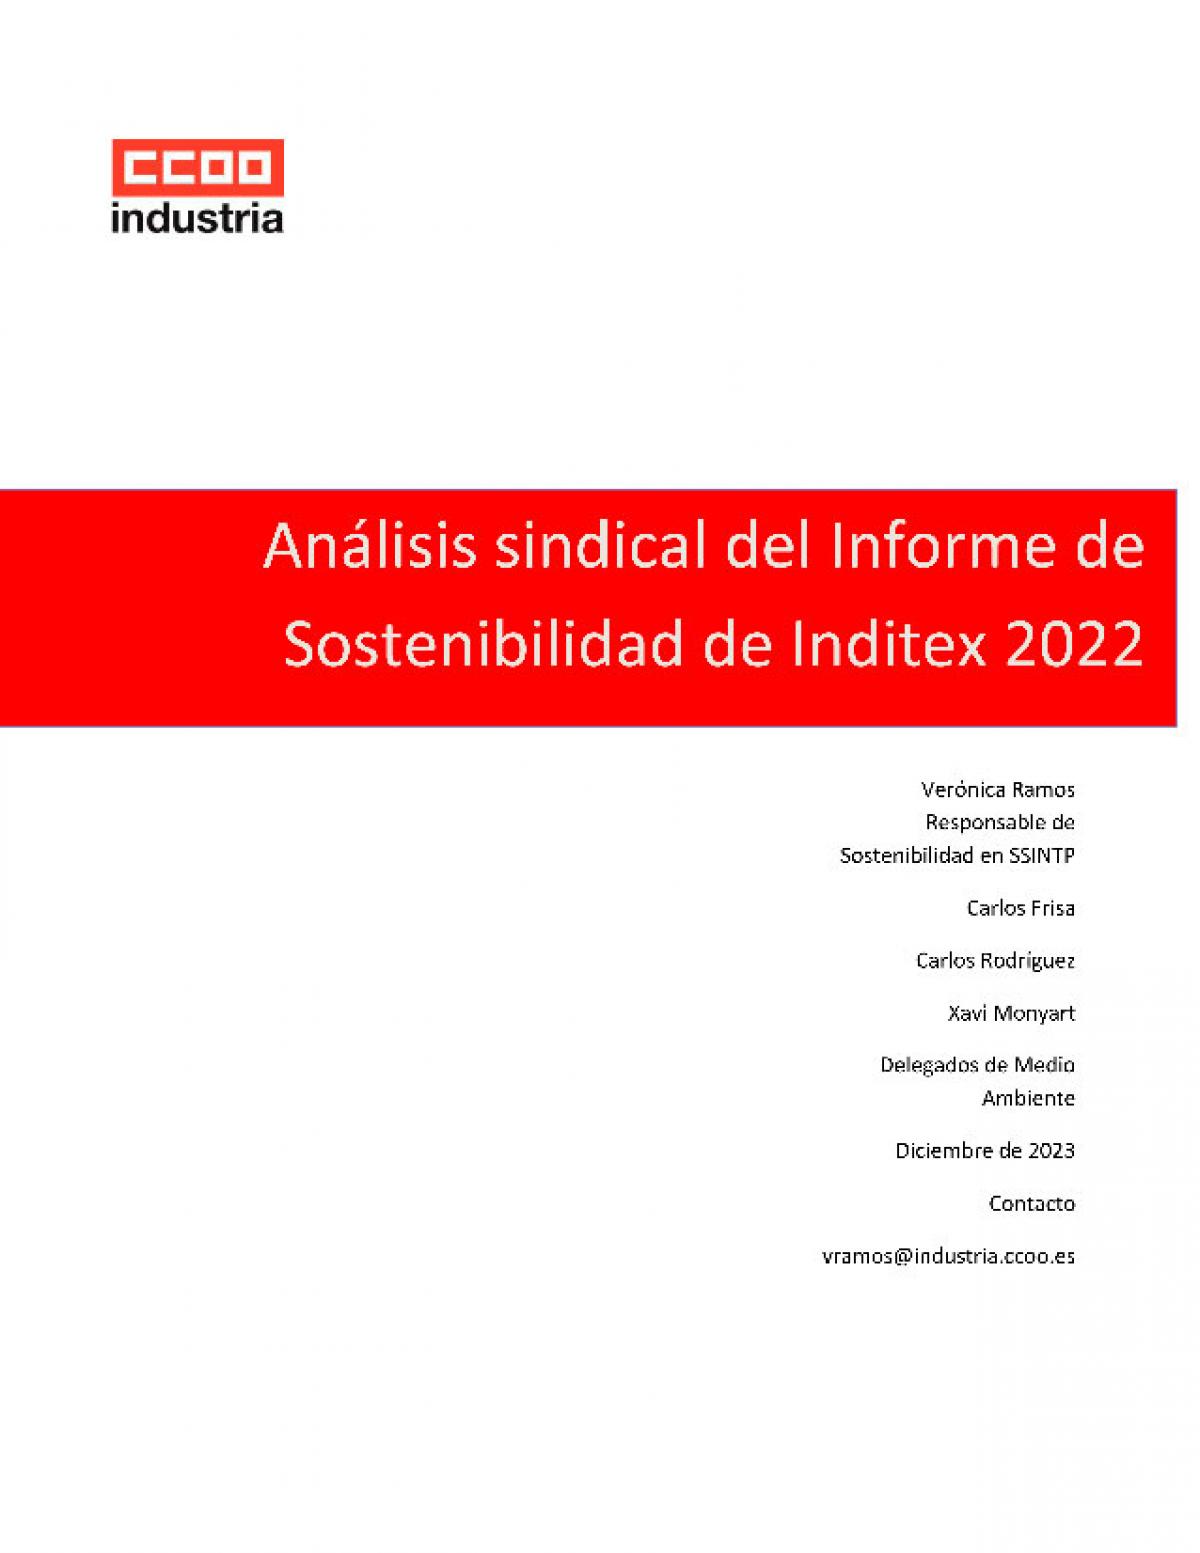 Anlisis sindical informe de sostenibilidad INDITEX